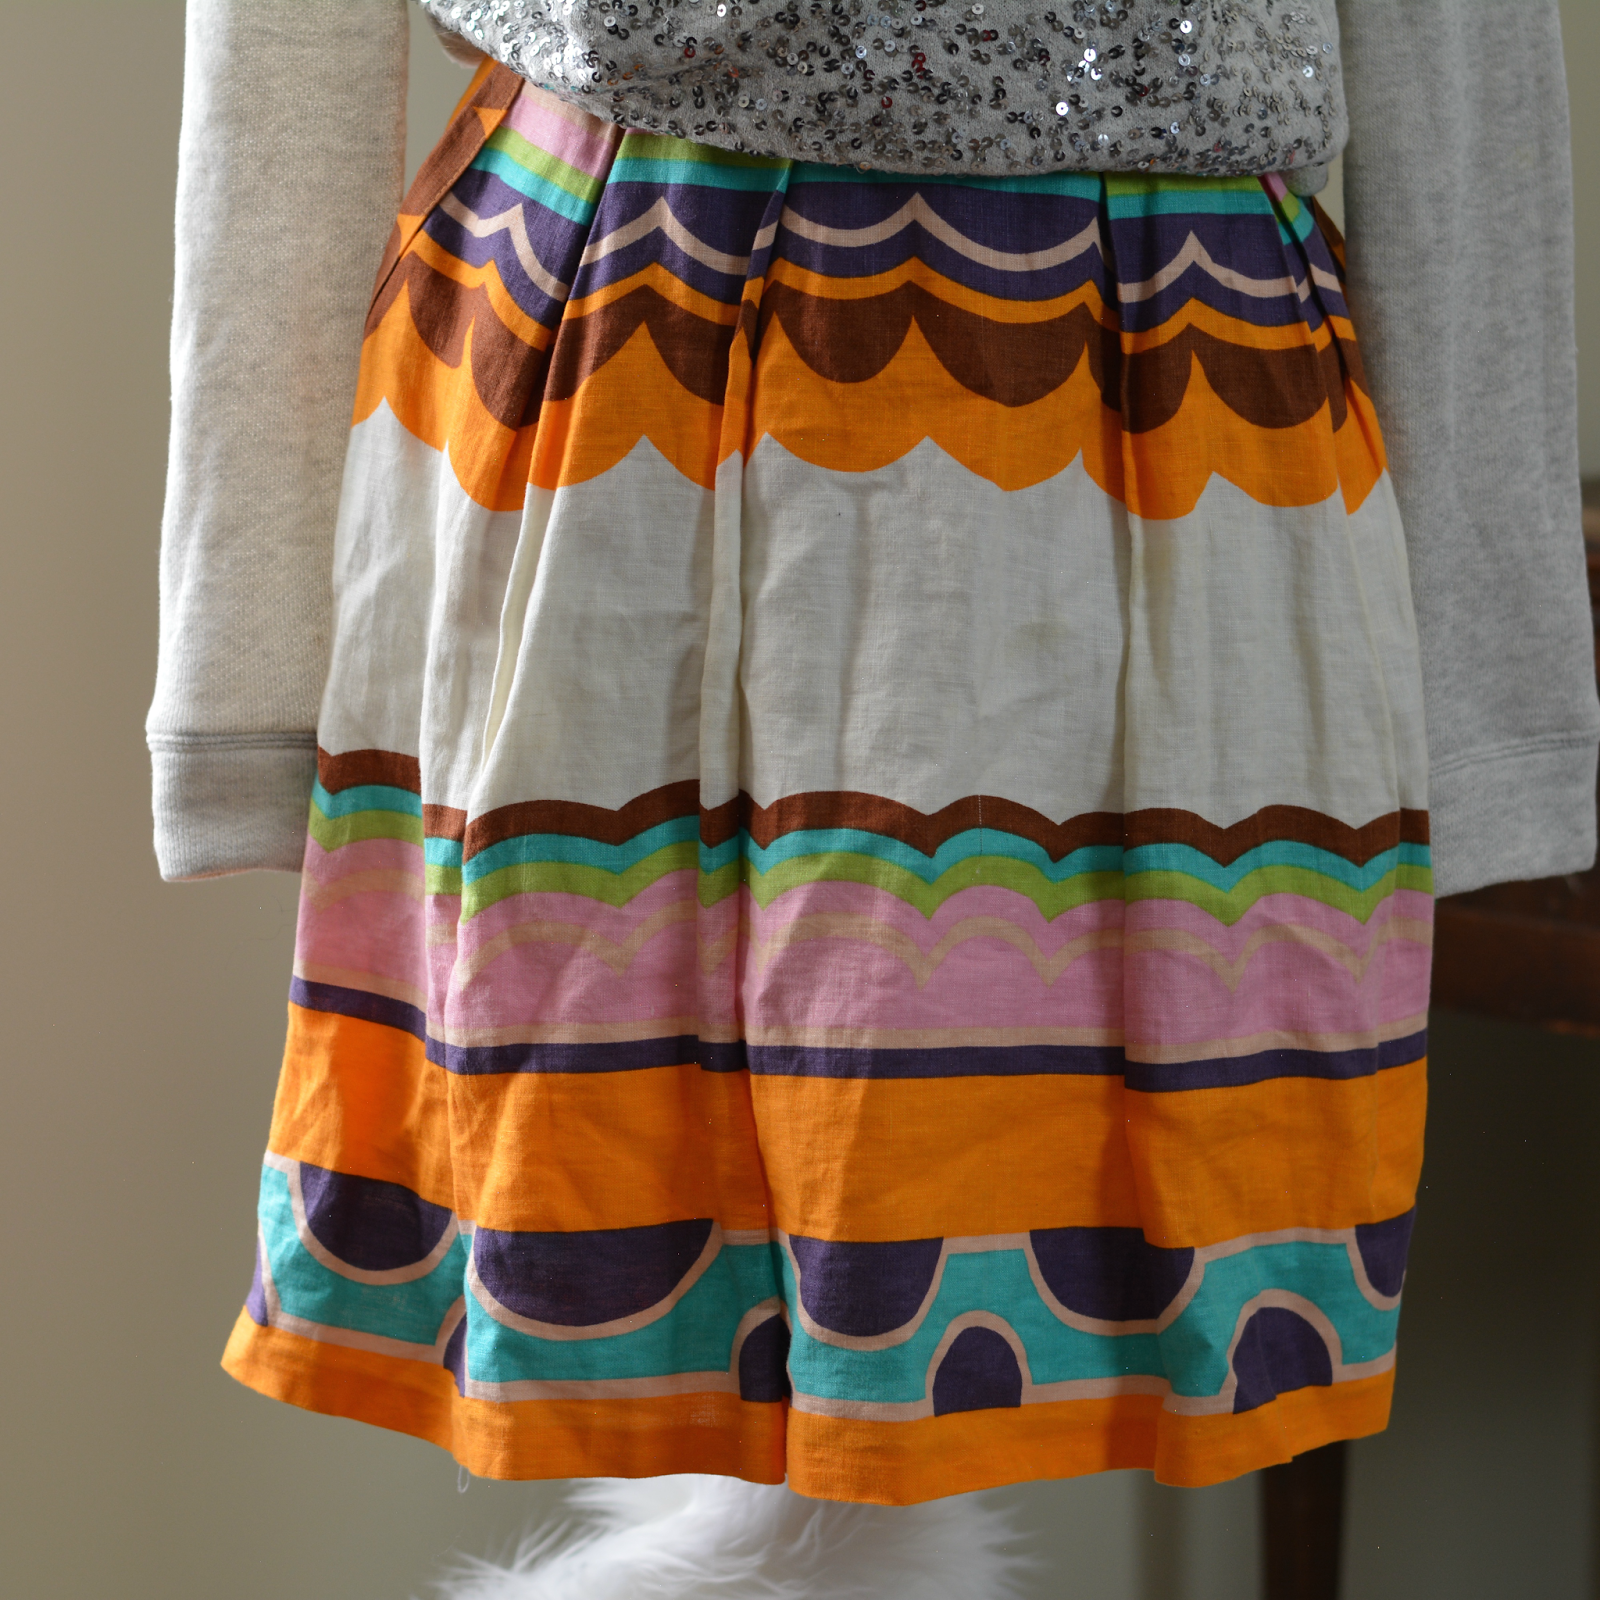 asos skirt from thrift store